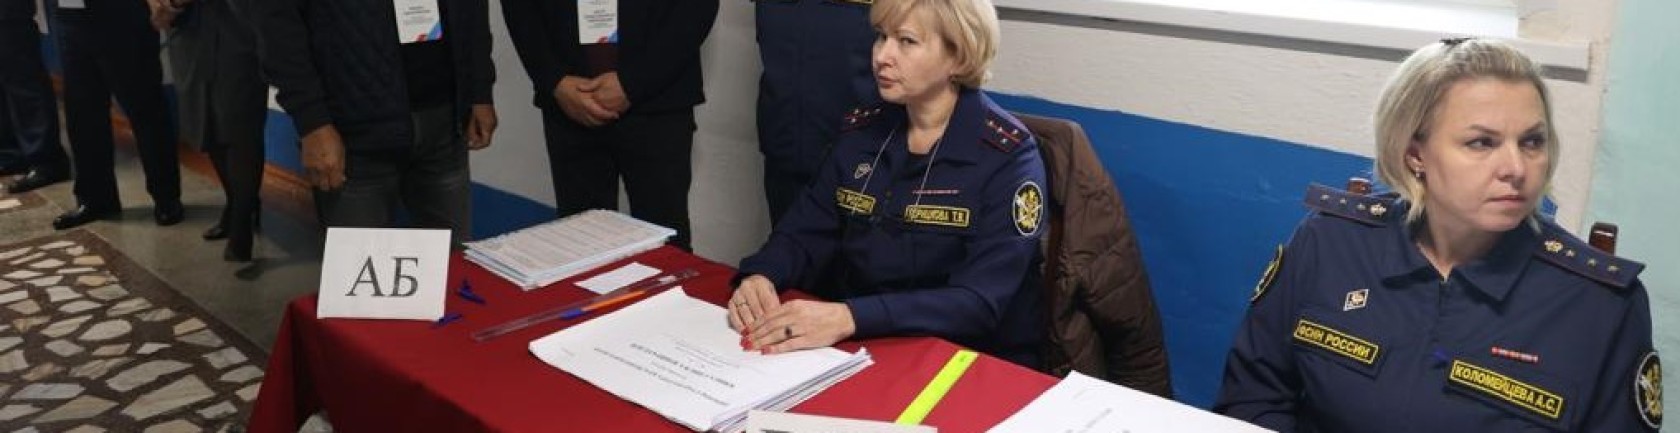 Члены Общественной наблюдательной комиссии проконтролировали ход голосования в СИЗО г. Красноярска